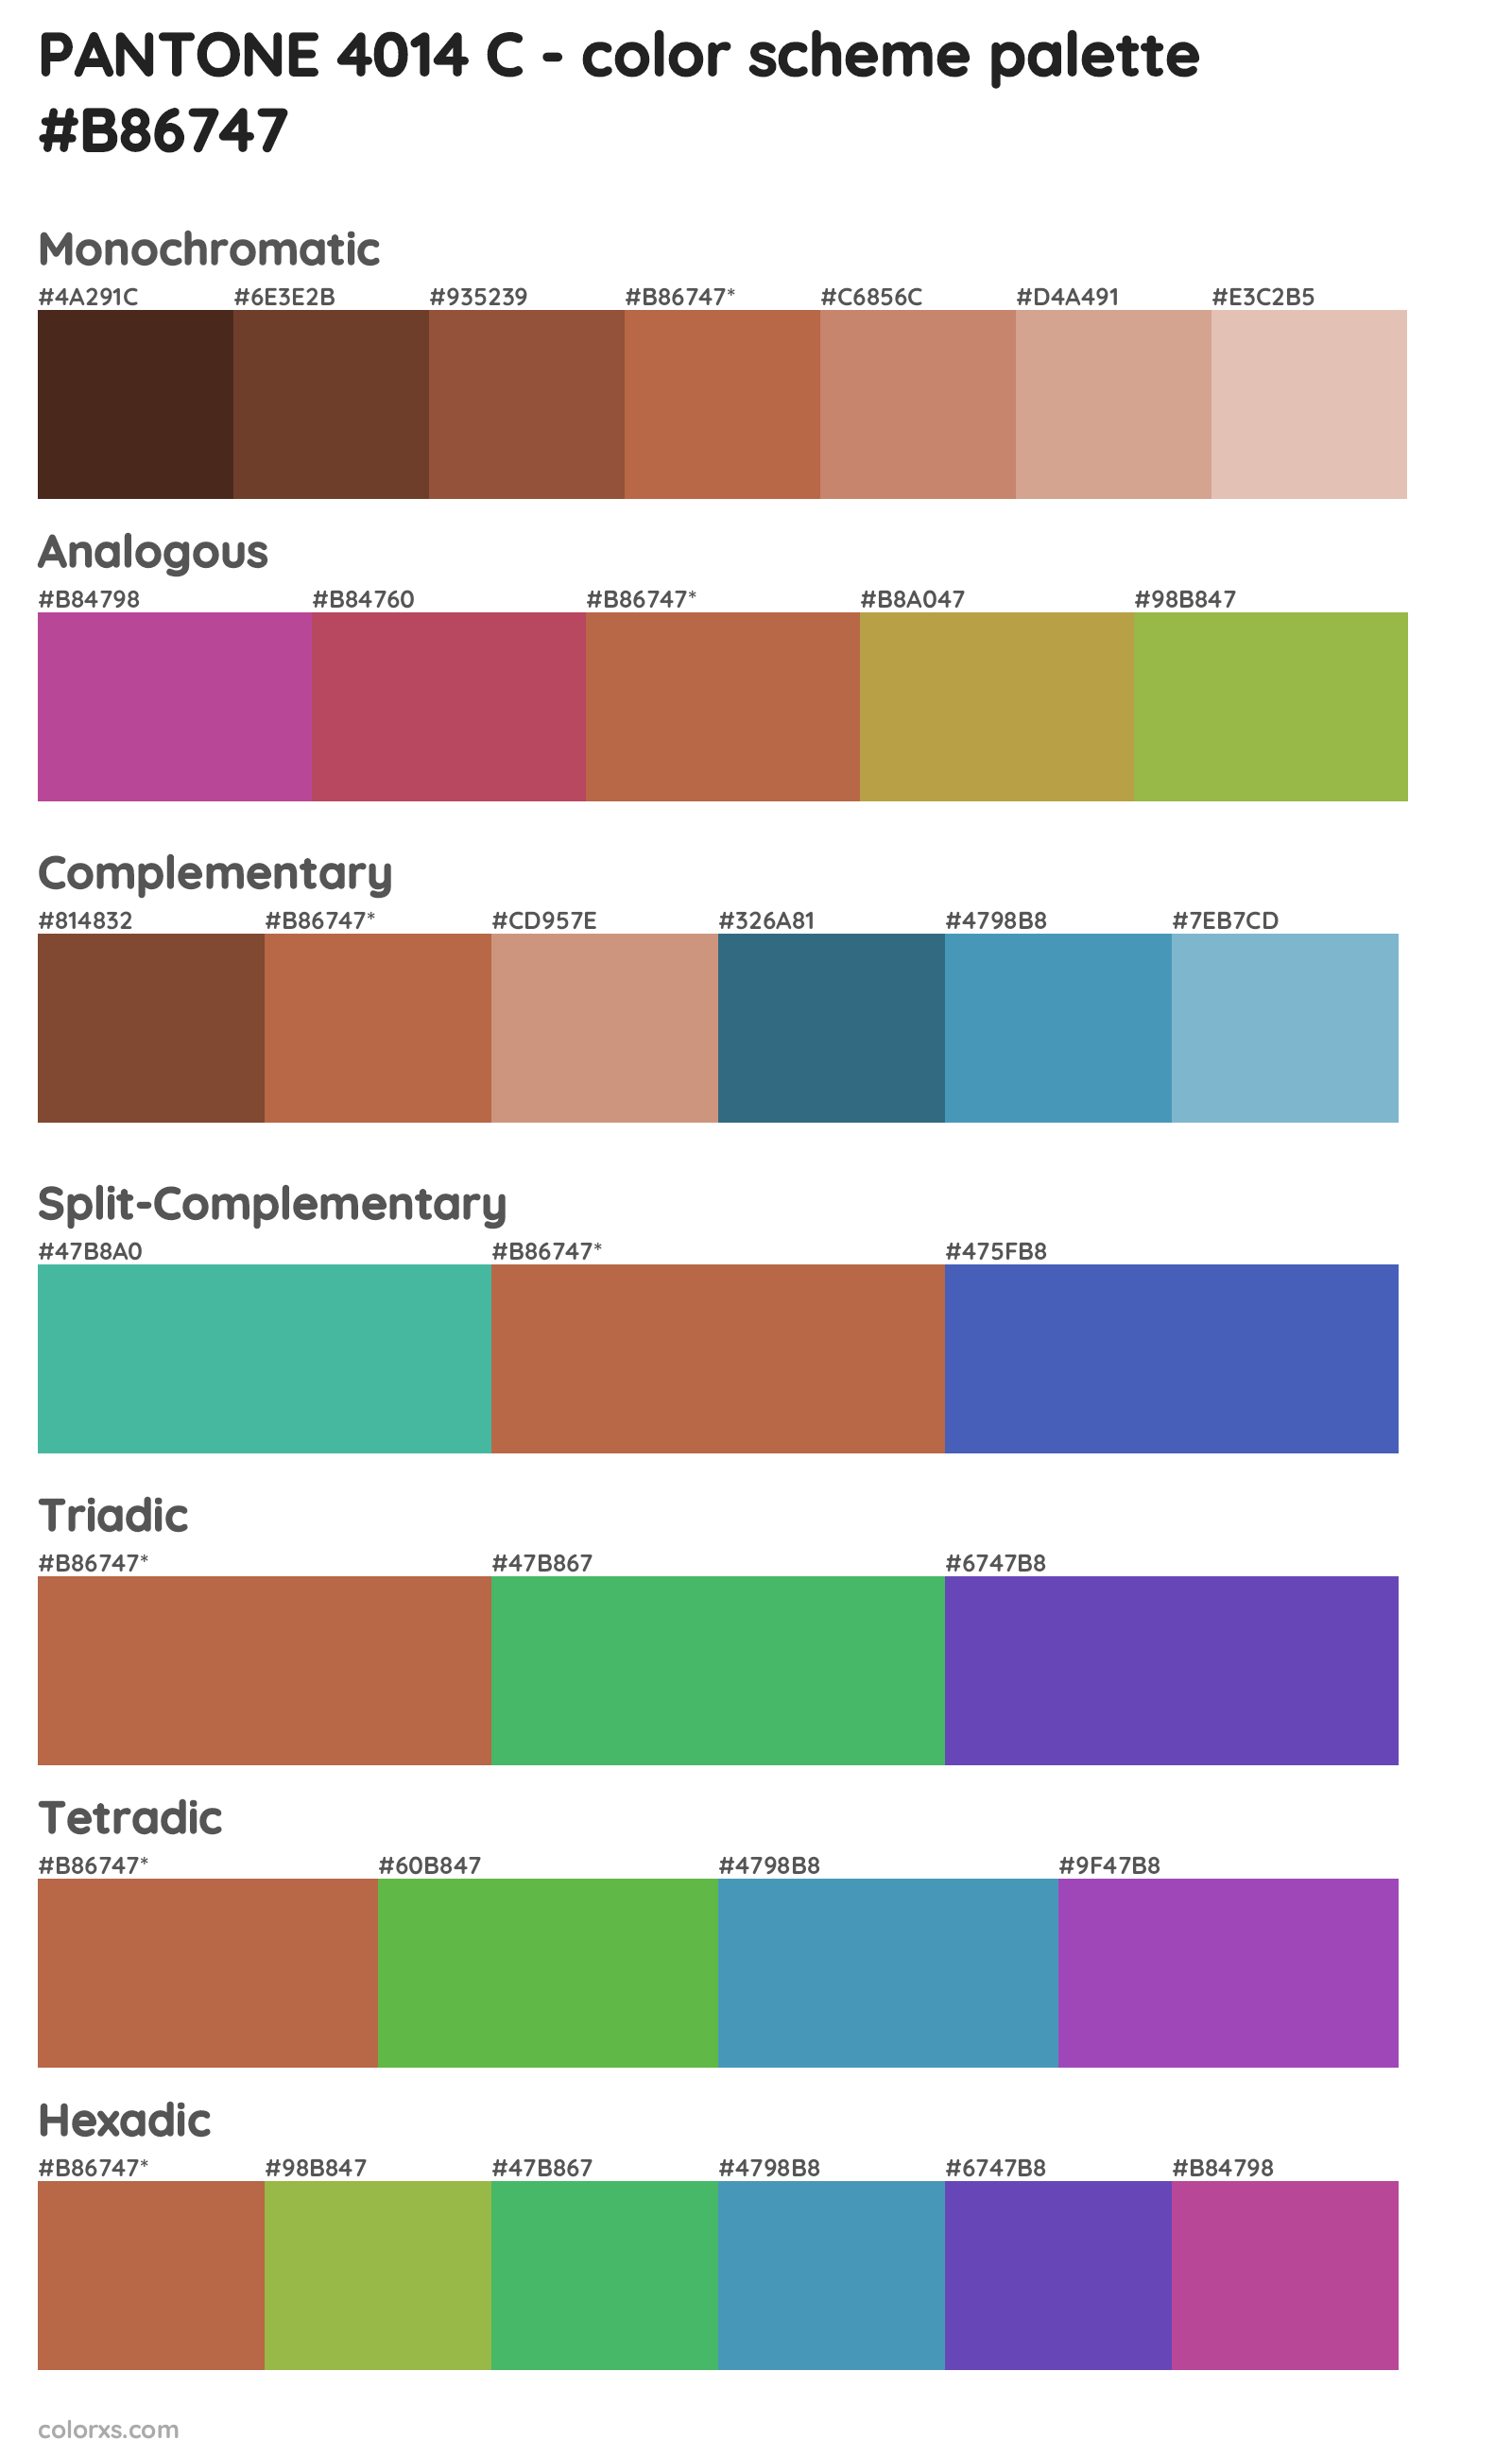 PANTONE 4014 C Color Scheme Palettes